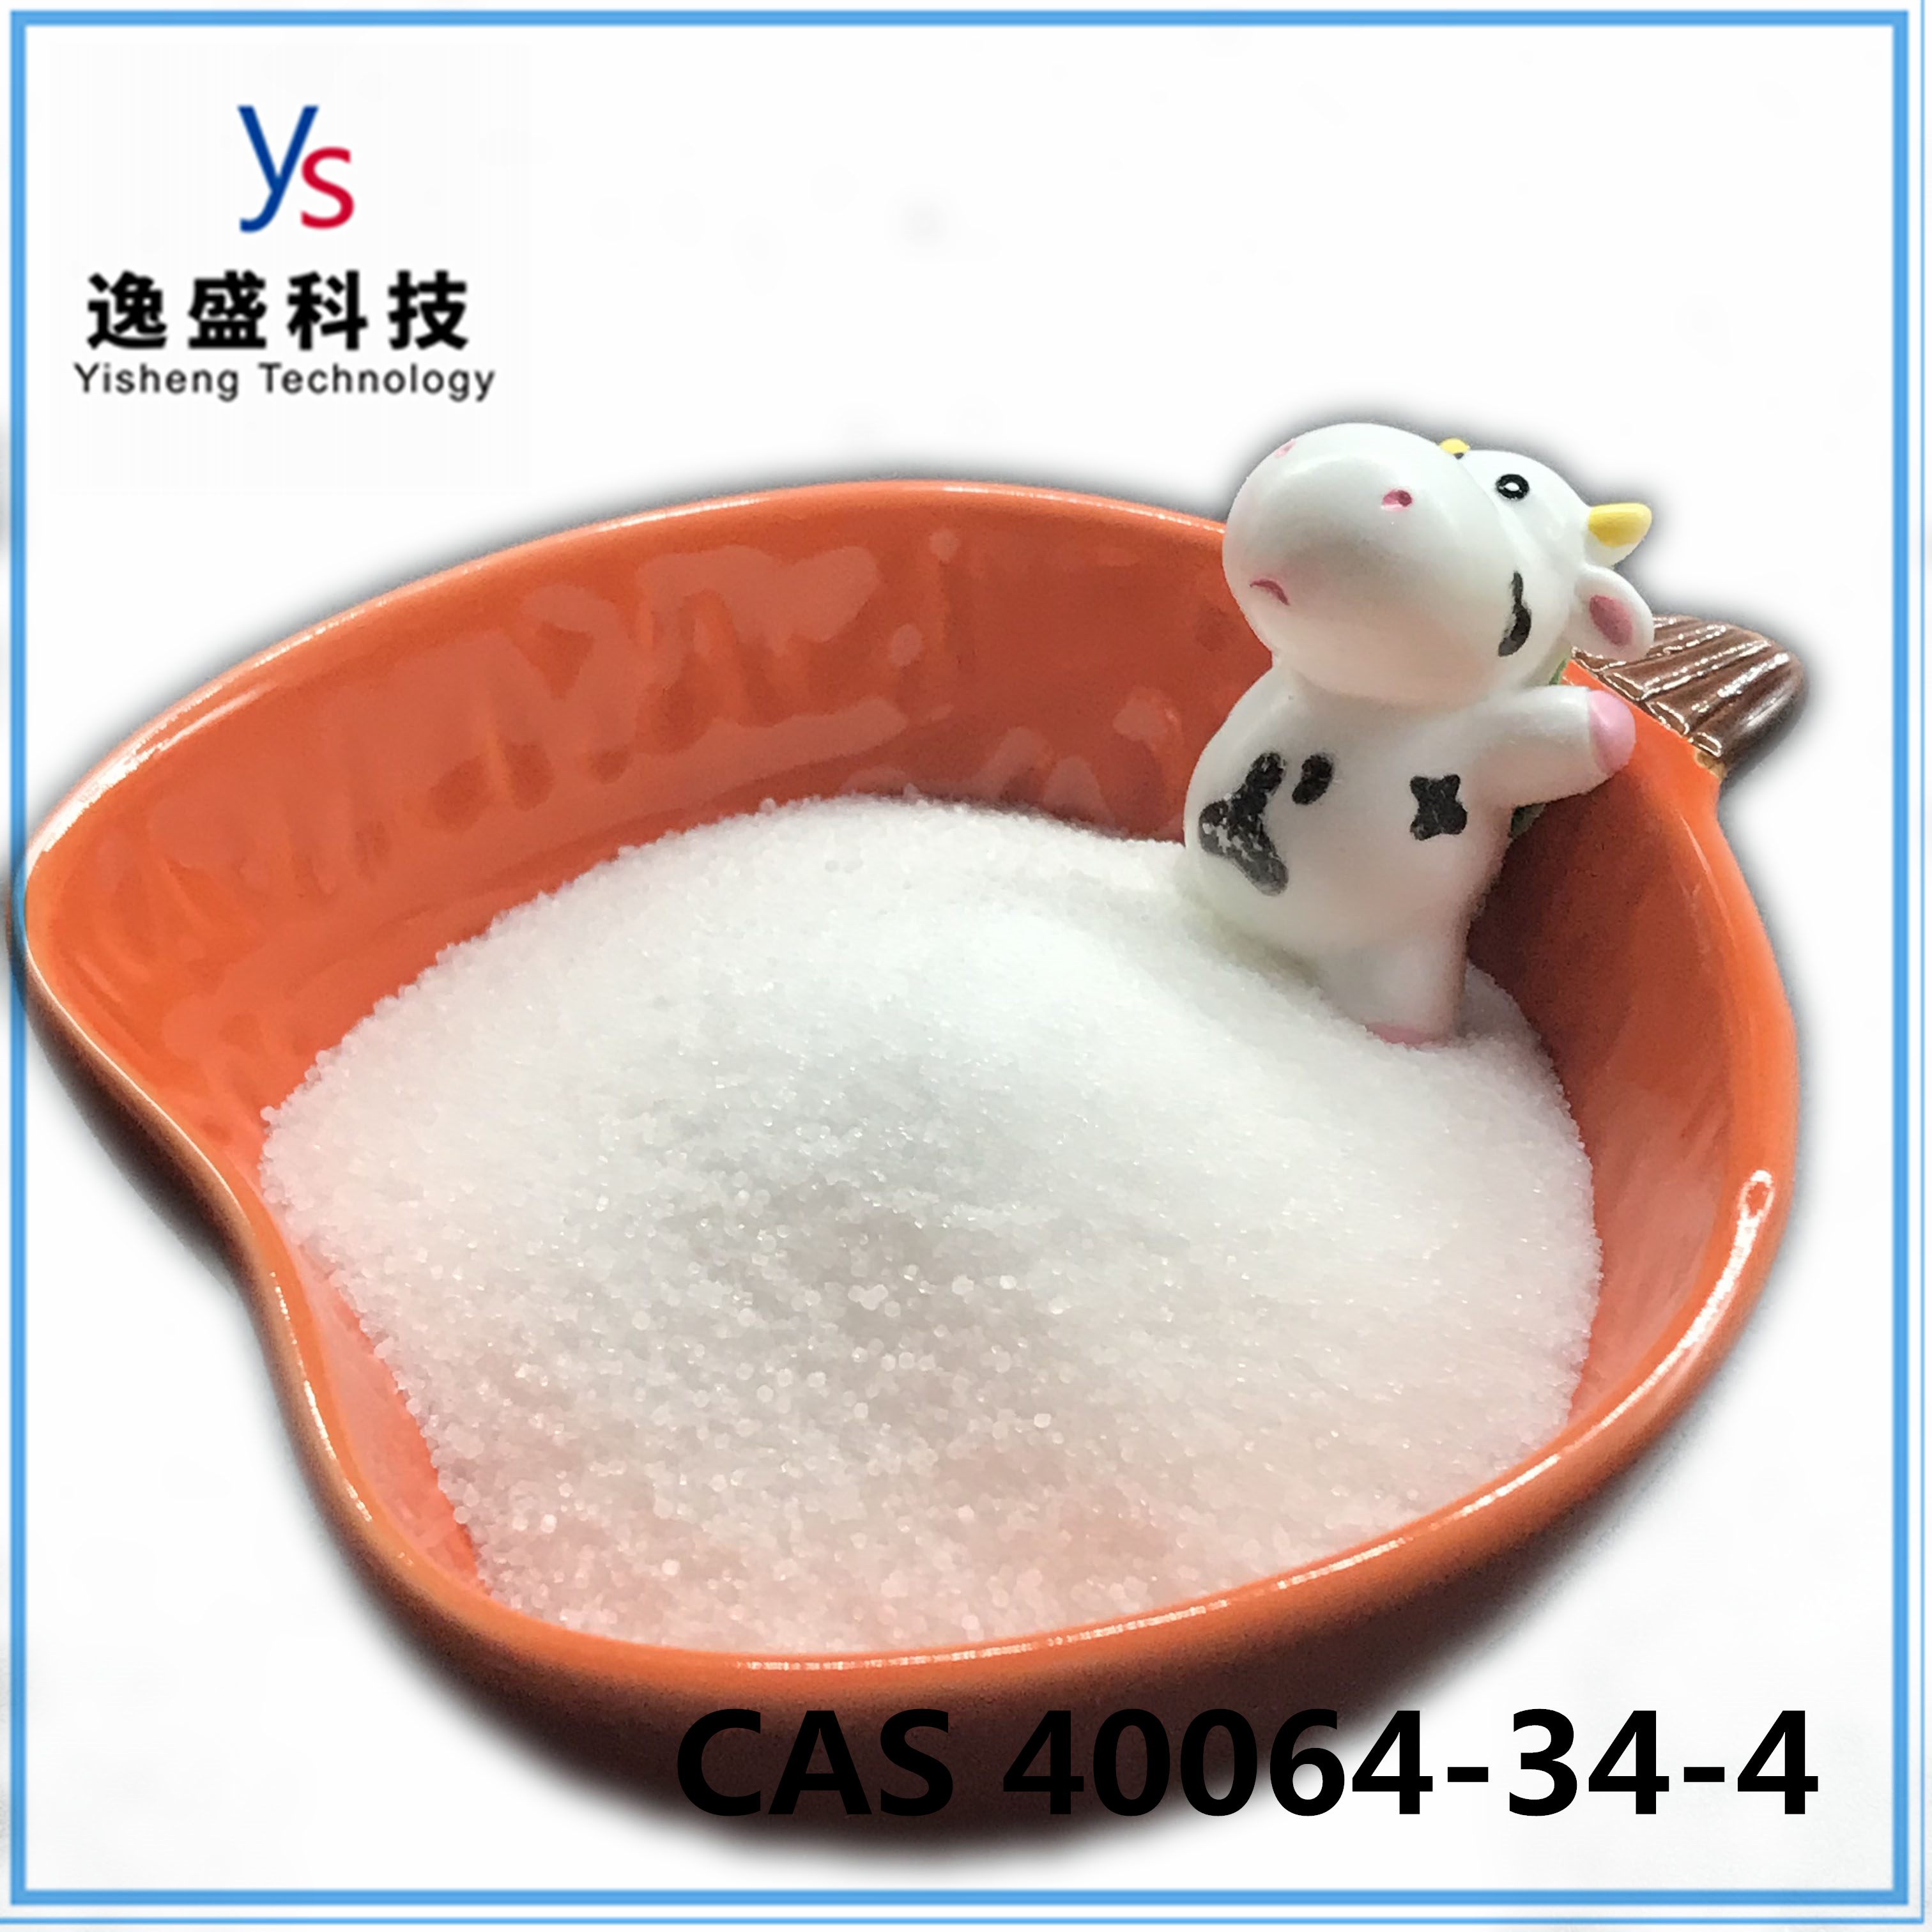 Salud personalizada White 4 4-Piperidinediol clorhidrato CAS 40064-34-4